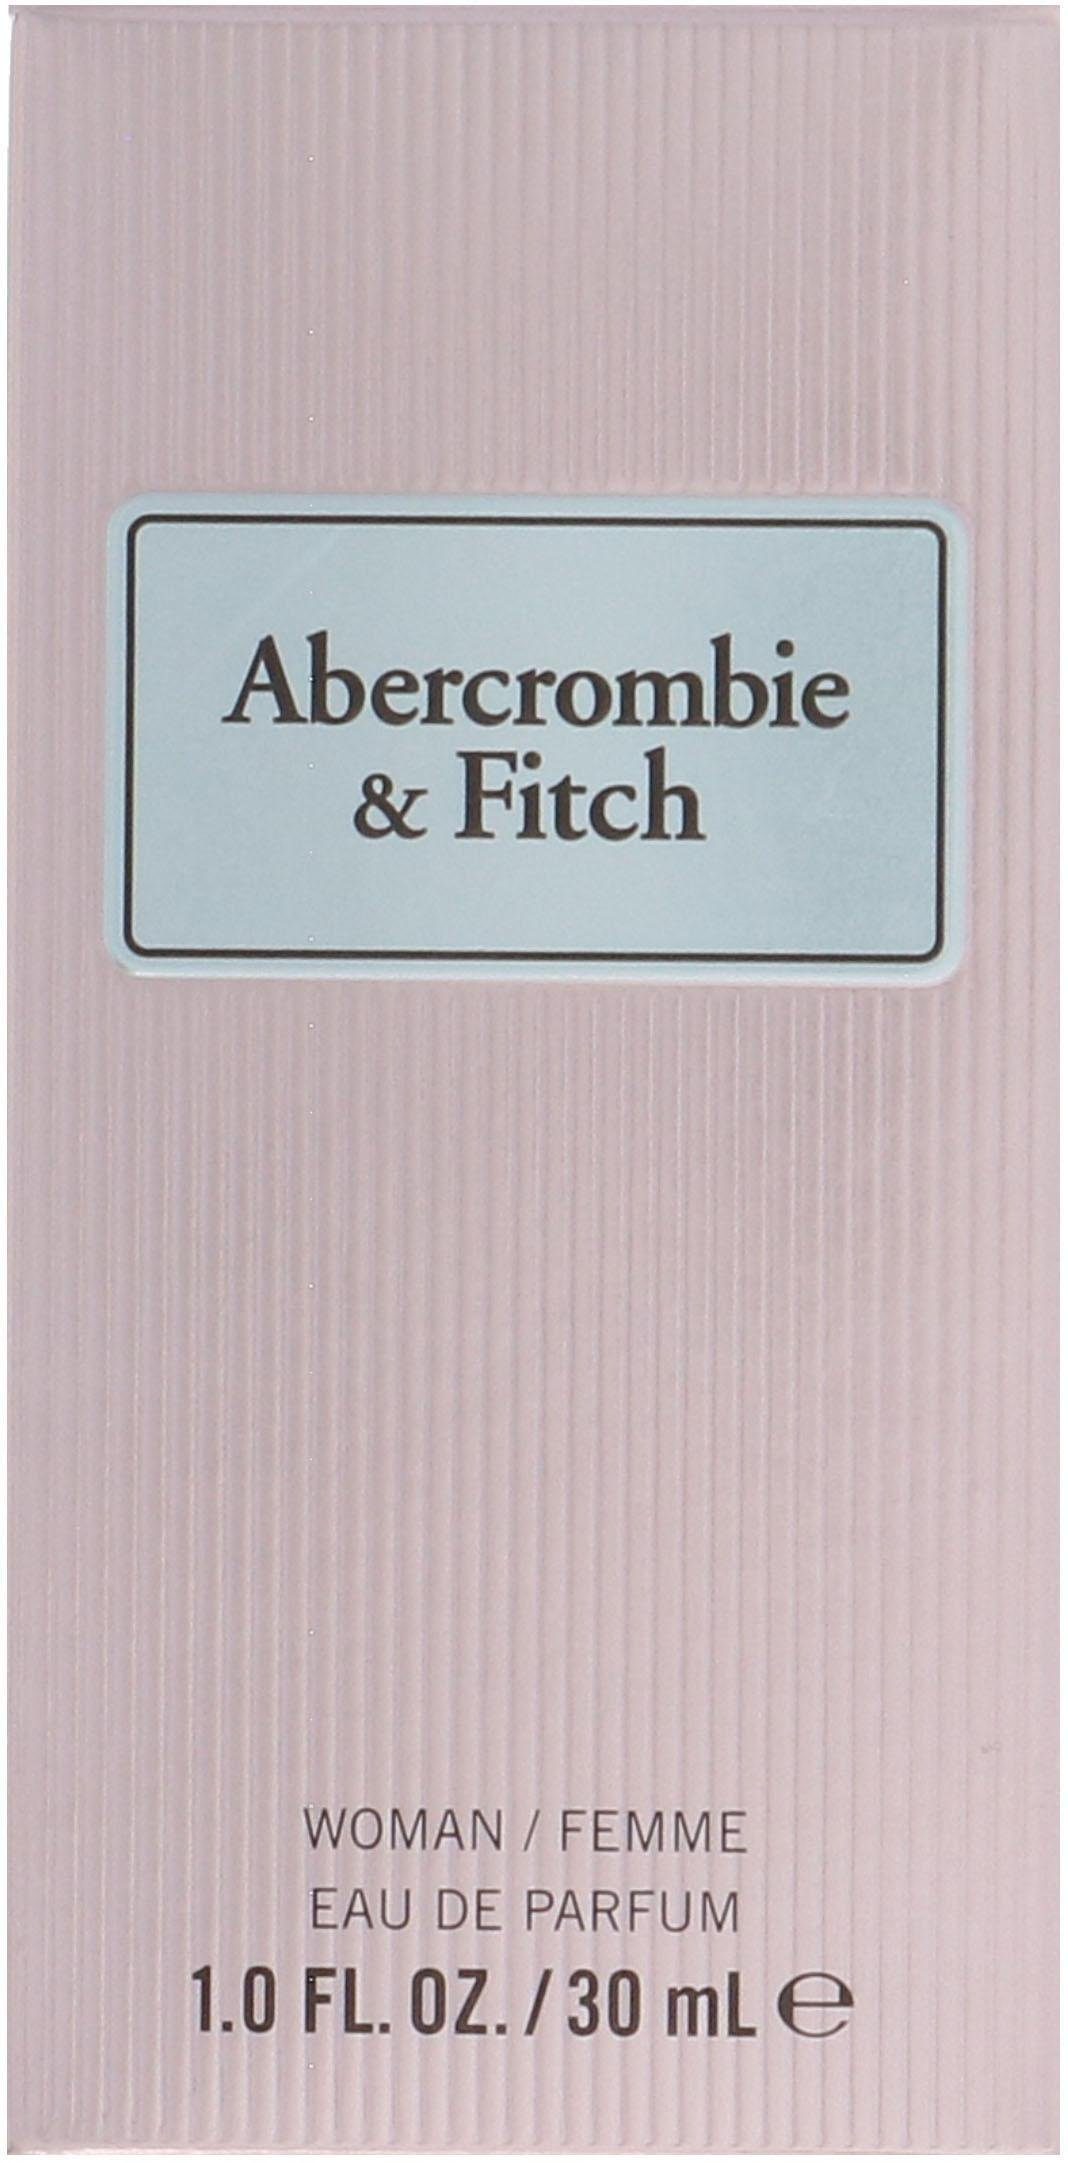 Eau de Instinct & Women Fitch First Parfum Abercrombie